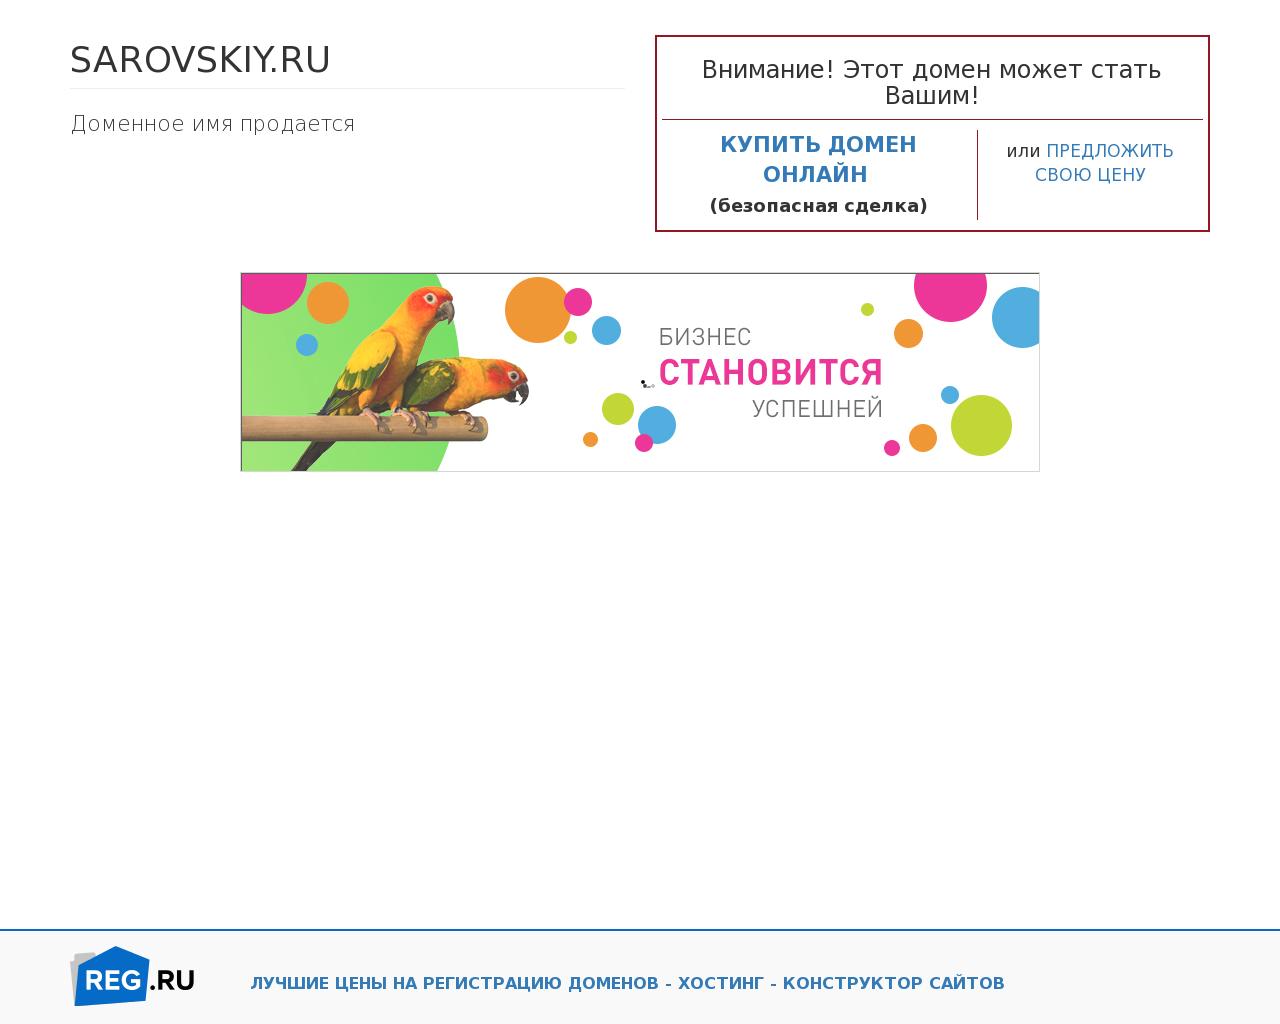 Изображение сайта sarovskiy.ru в разрешении 1280x1024